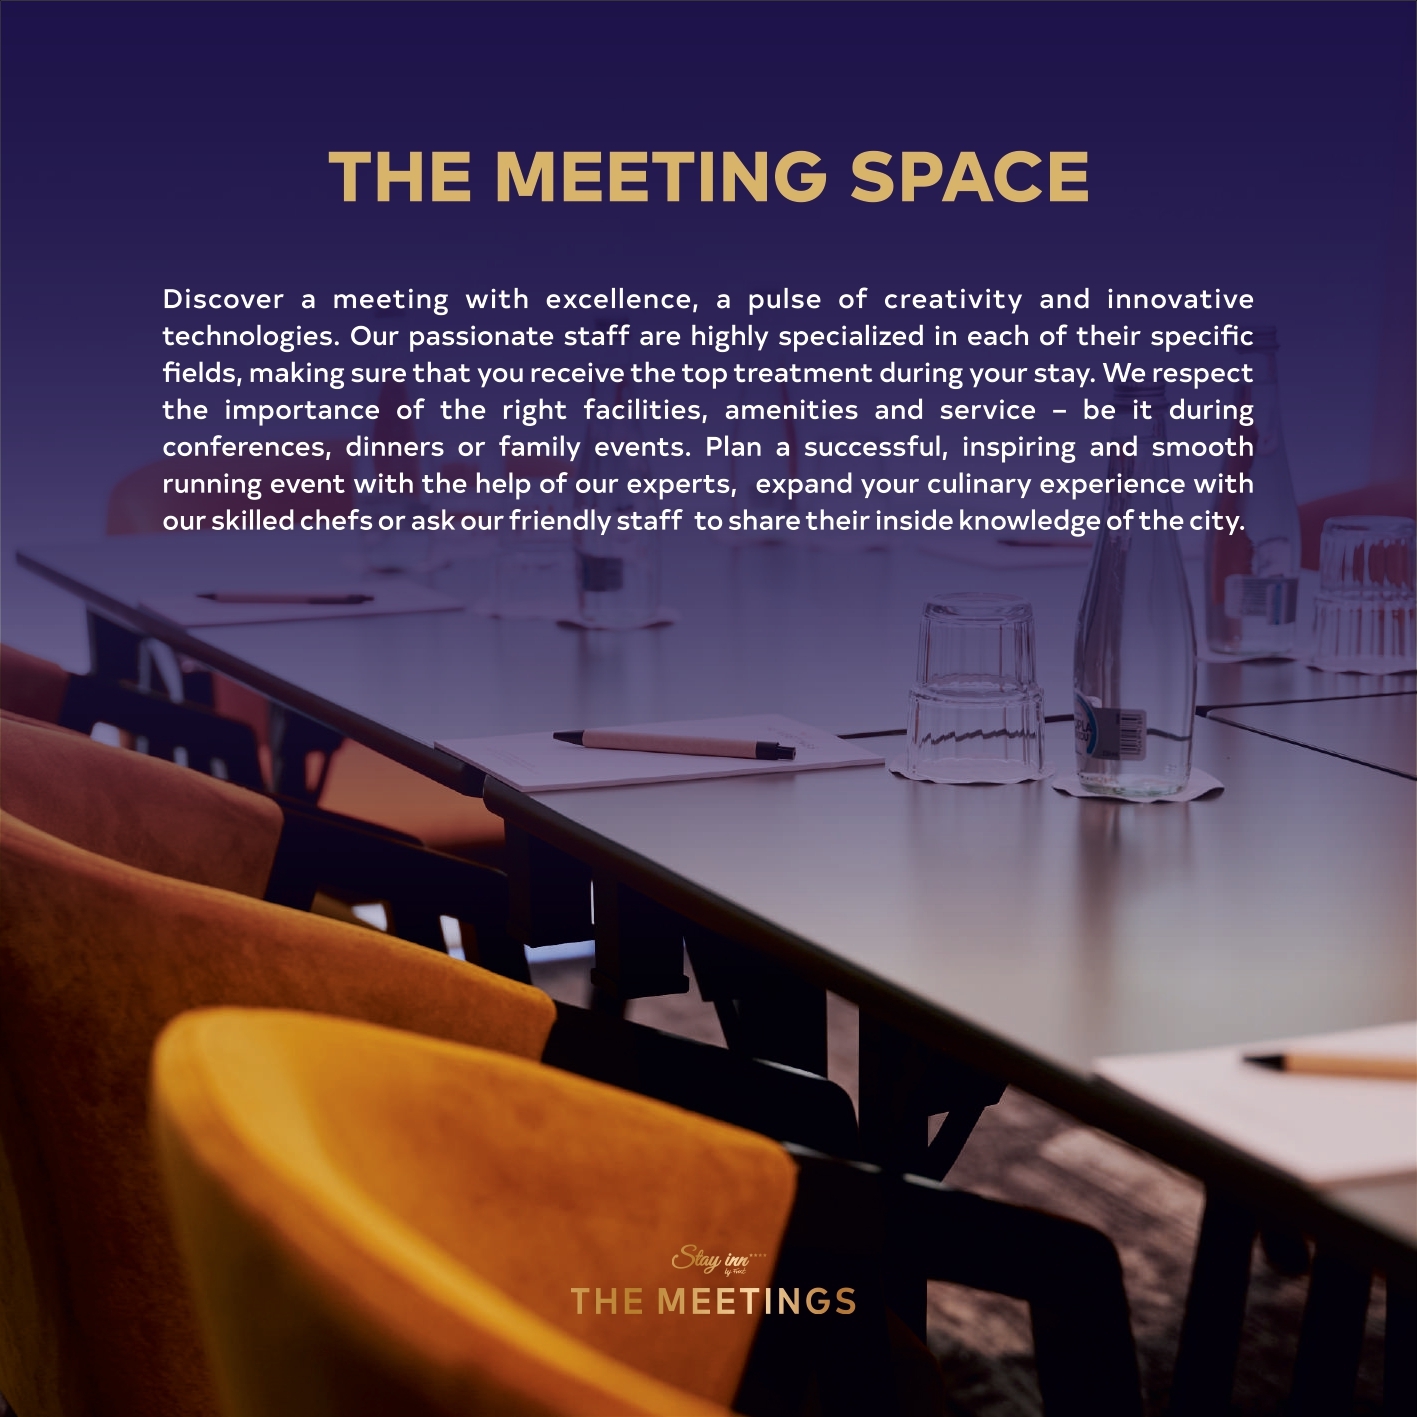 THE MEETINGS6